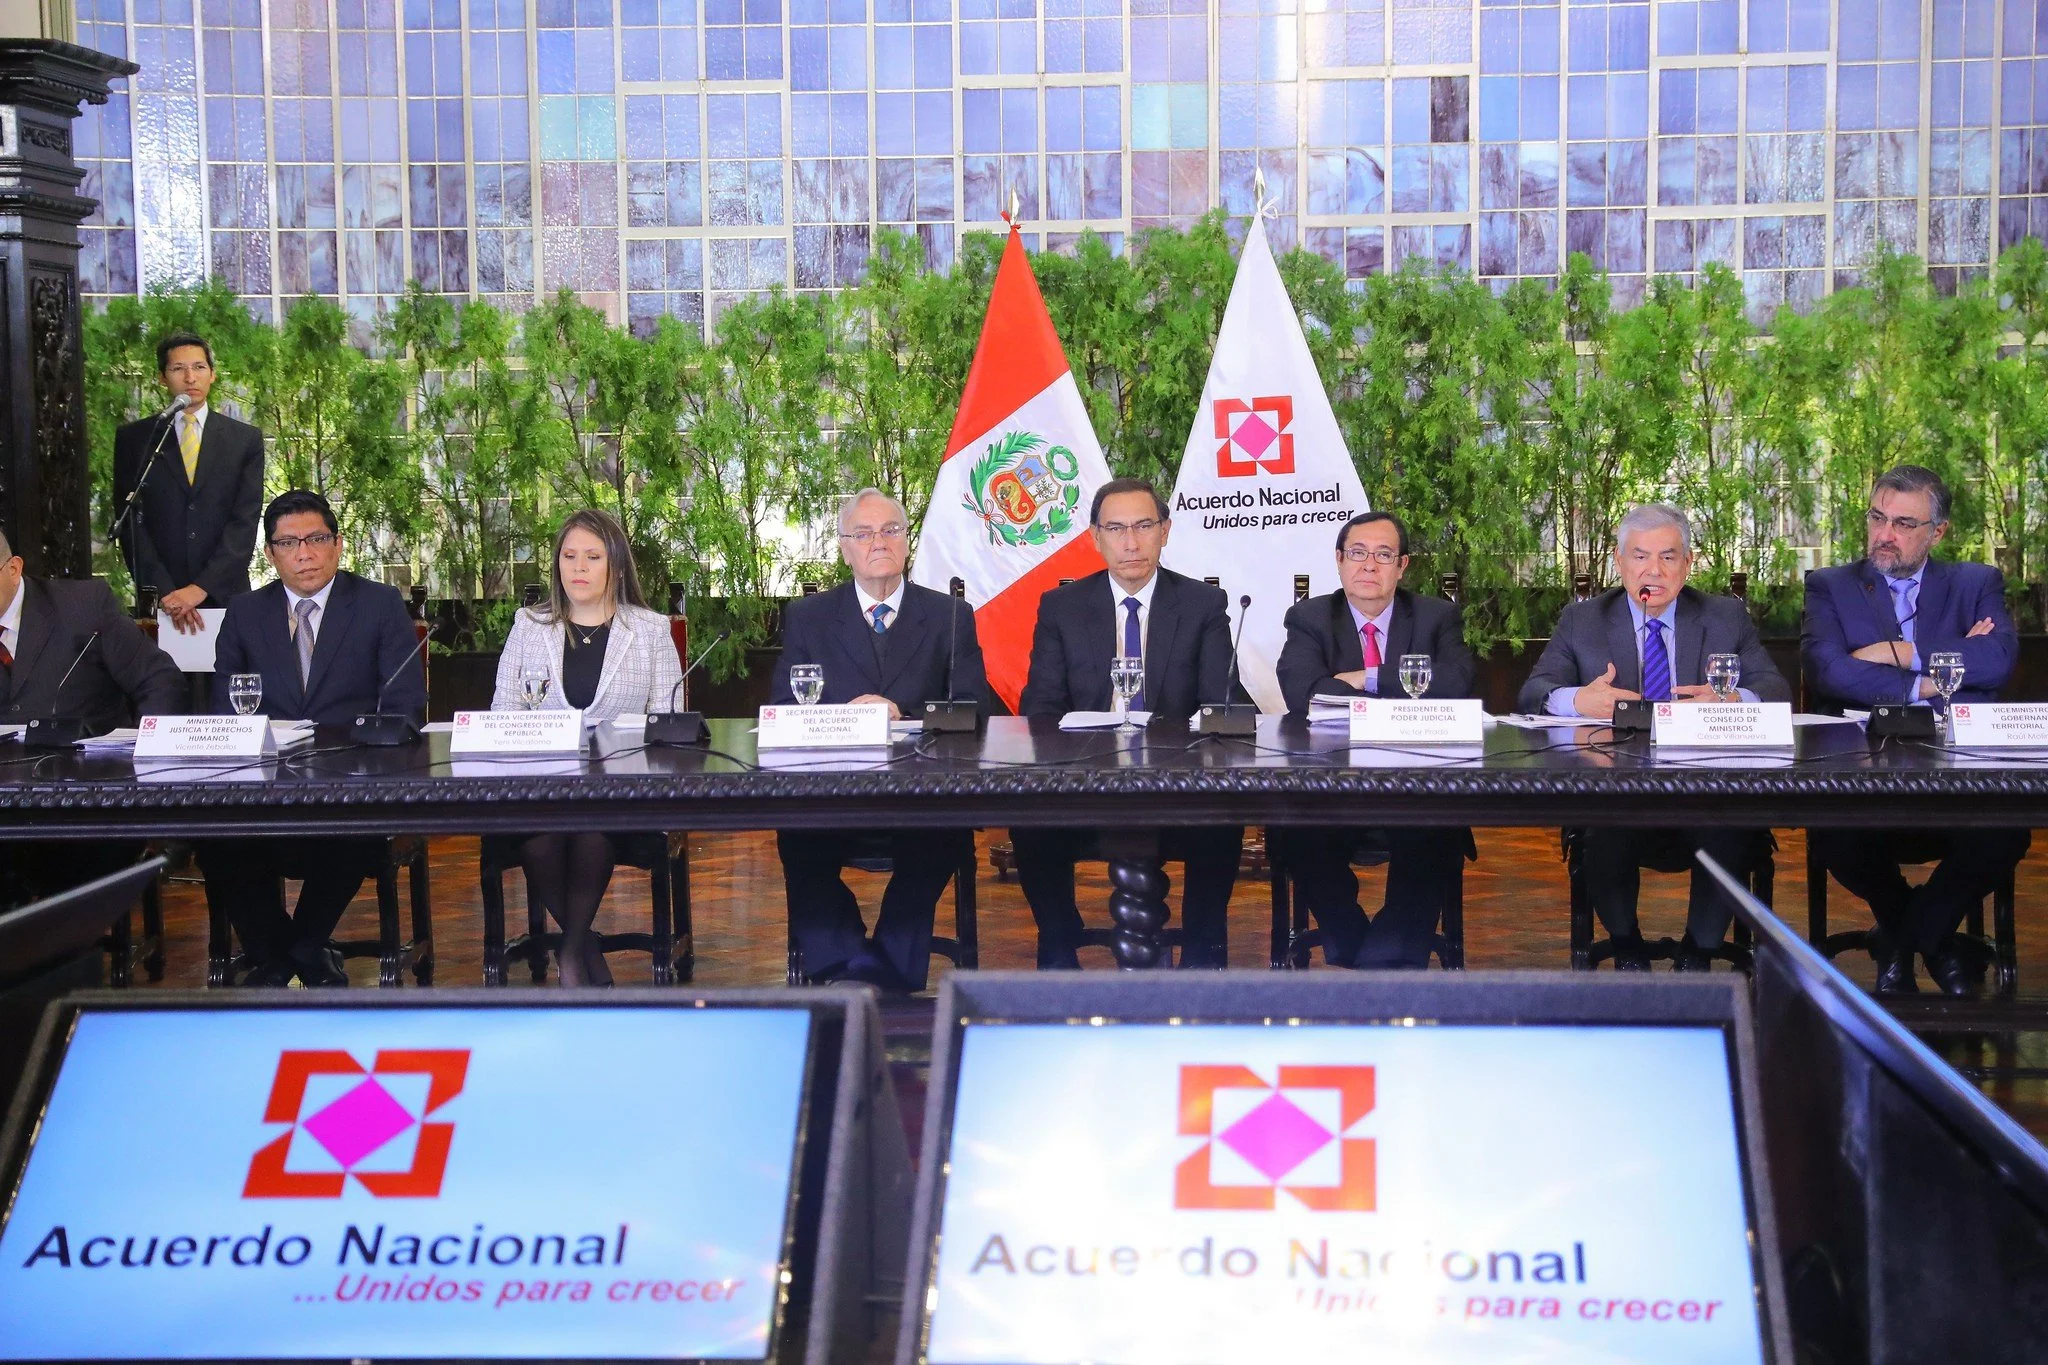 Presidente Martín Vizcarra demanda no postergar reforma judicial y decidir